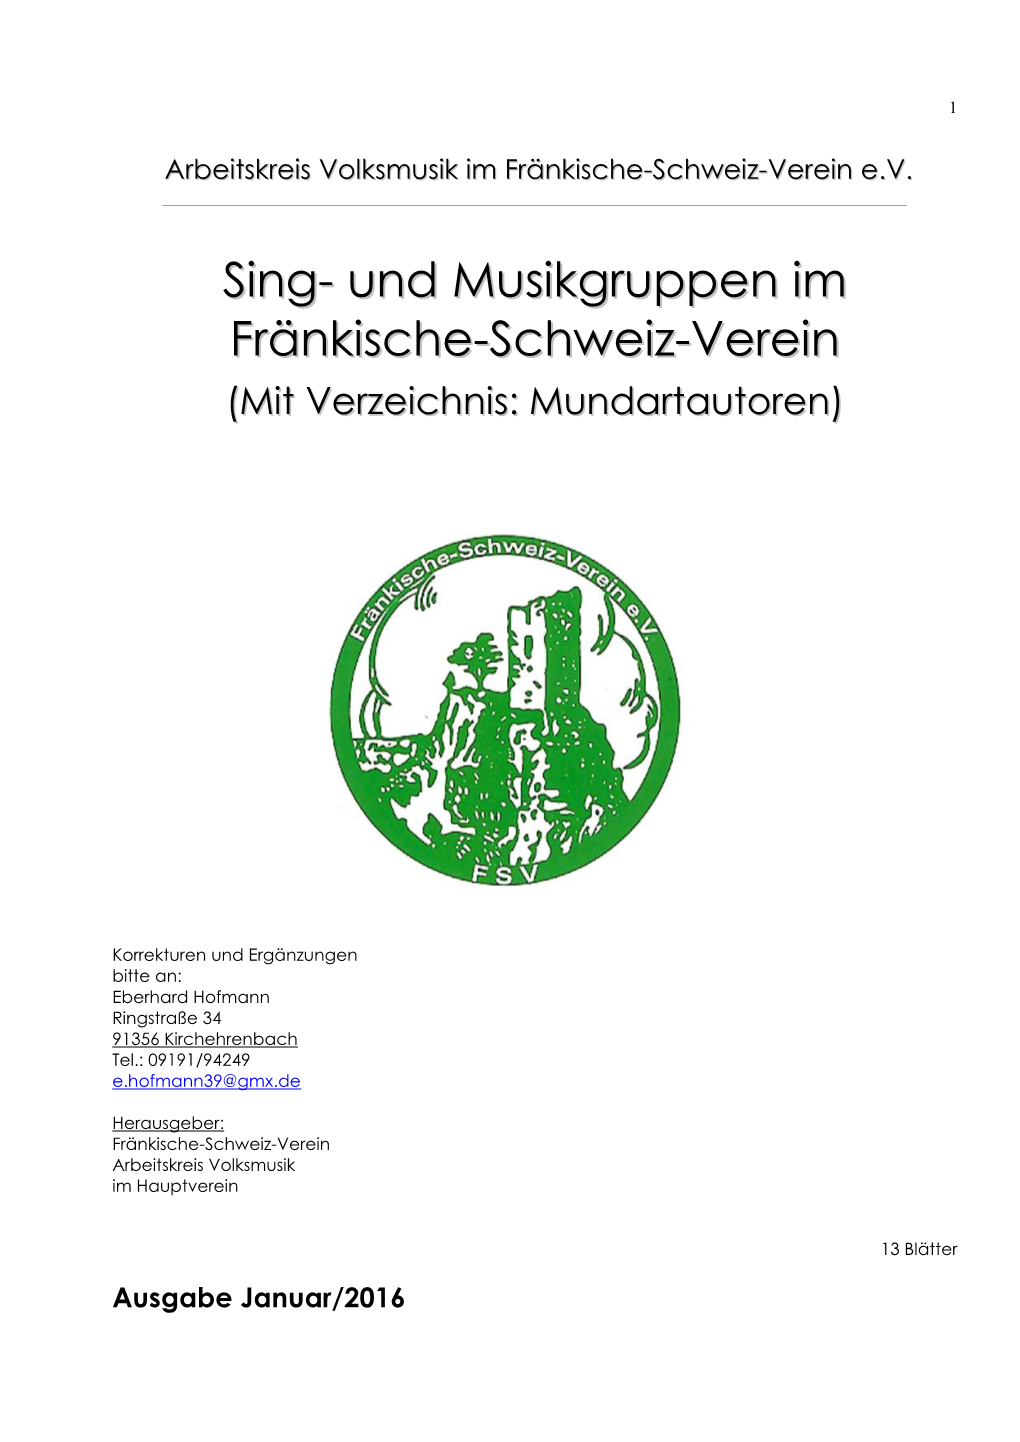 Singgruppen Sind Die Anteile Von Männlichen Und Weiblichen Stimmen Nicht Aufgeschlüsselt